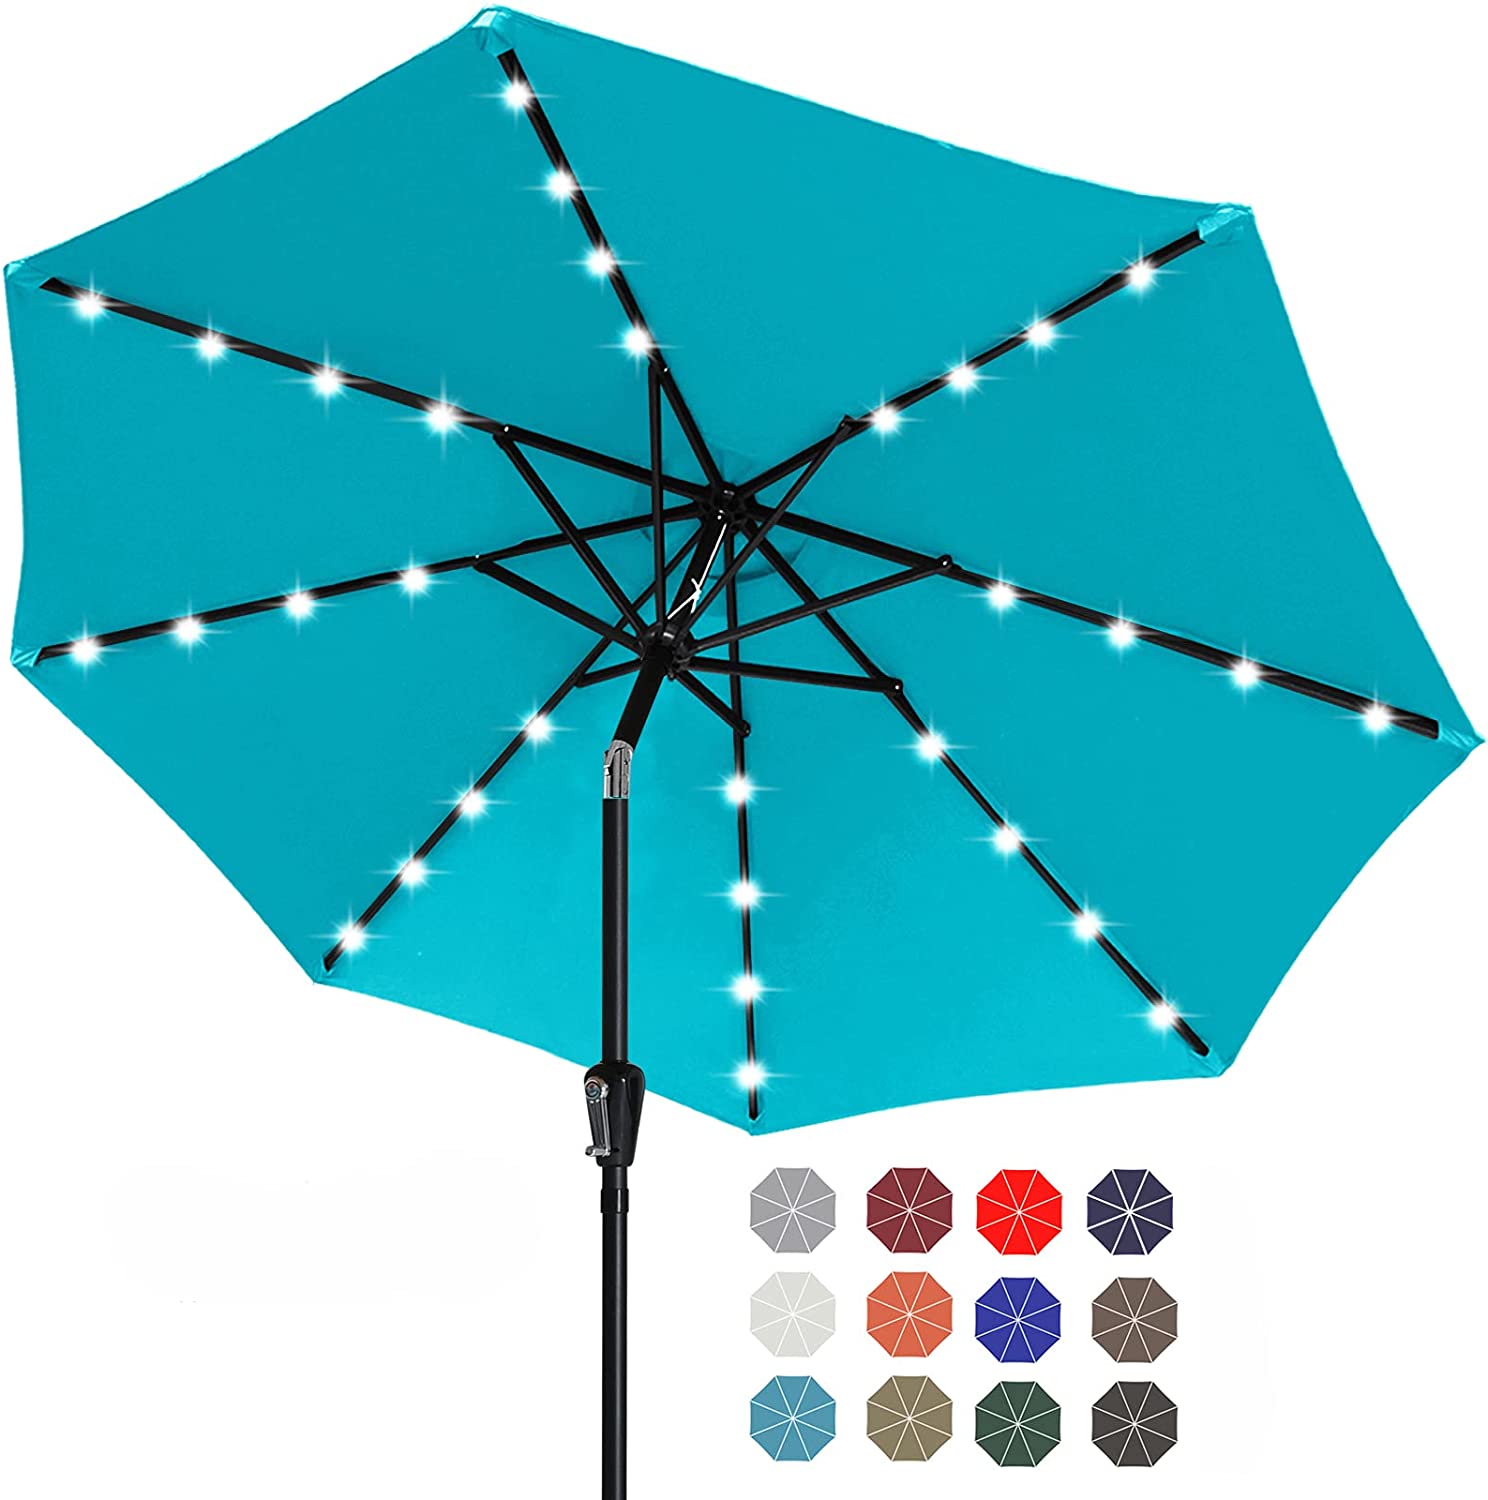 Outdoor patio garden waterproof parasol umbrellas